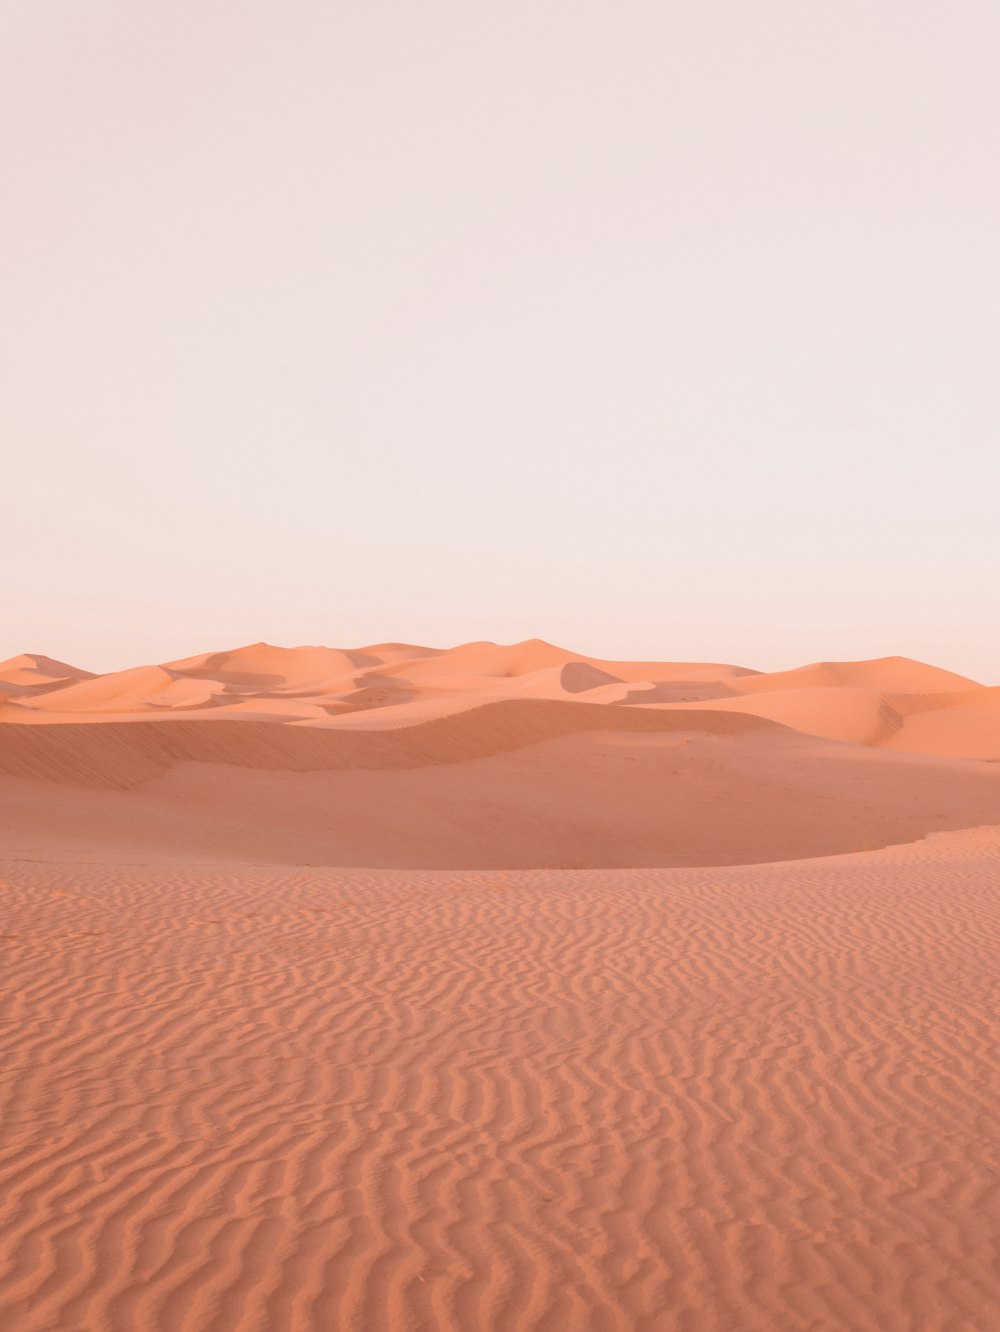 deserto marrom sob o céu branco durante o dia